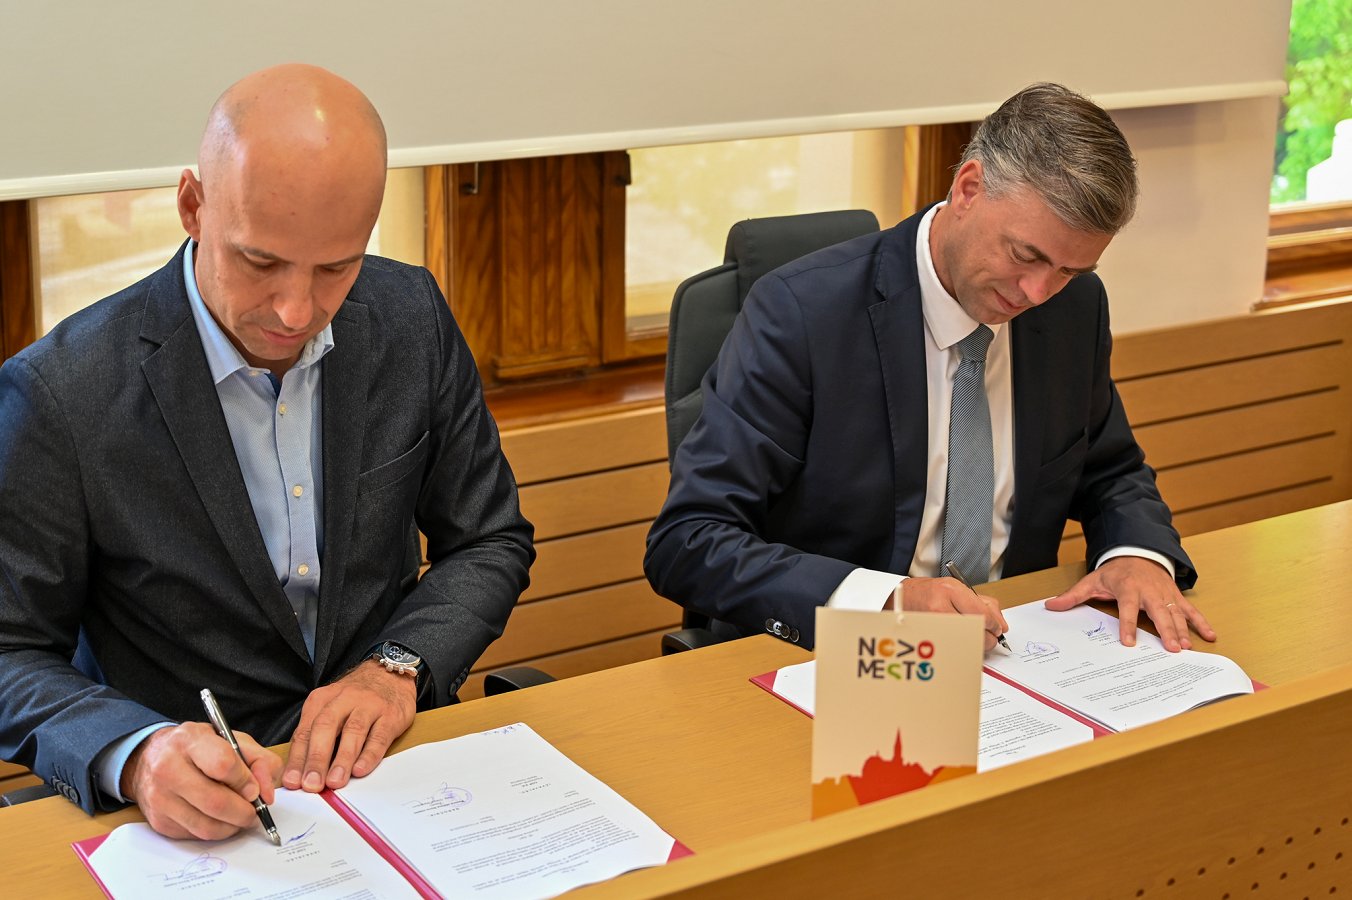 Župan Mestne občine Novo mesto Gregor Macedoni in predsednik uprave CGP Martin Gosenca podpisujeta pogodbo